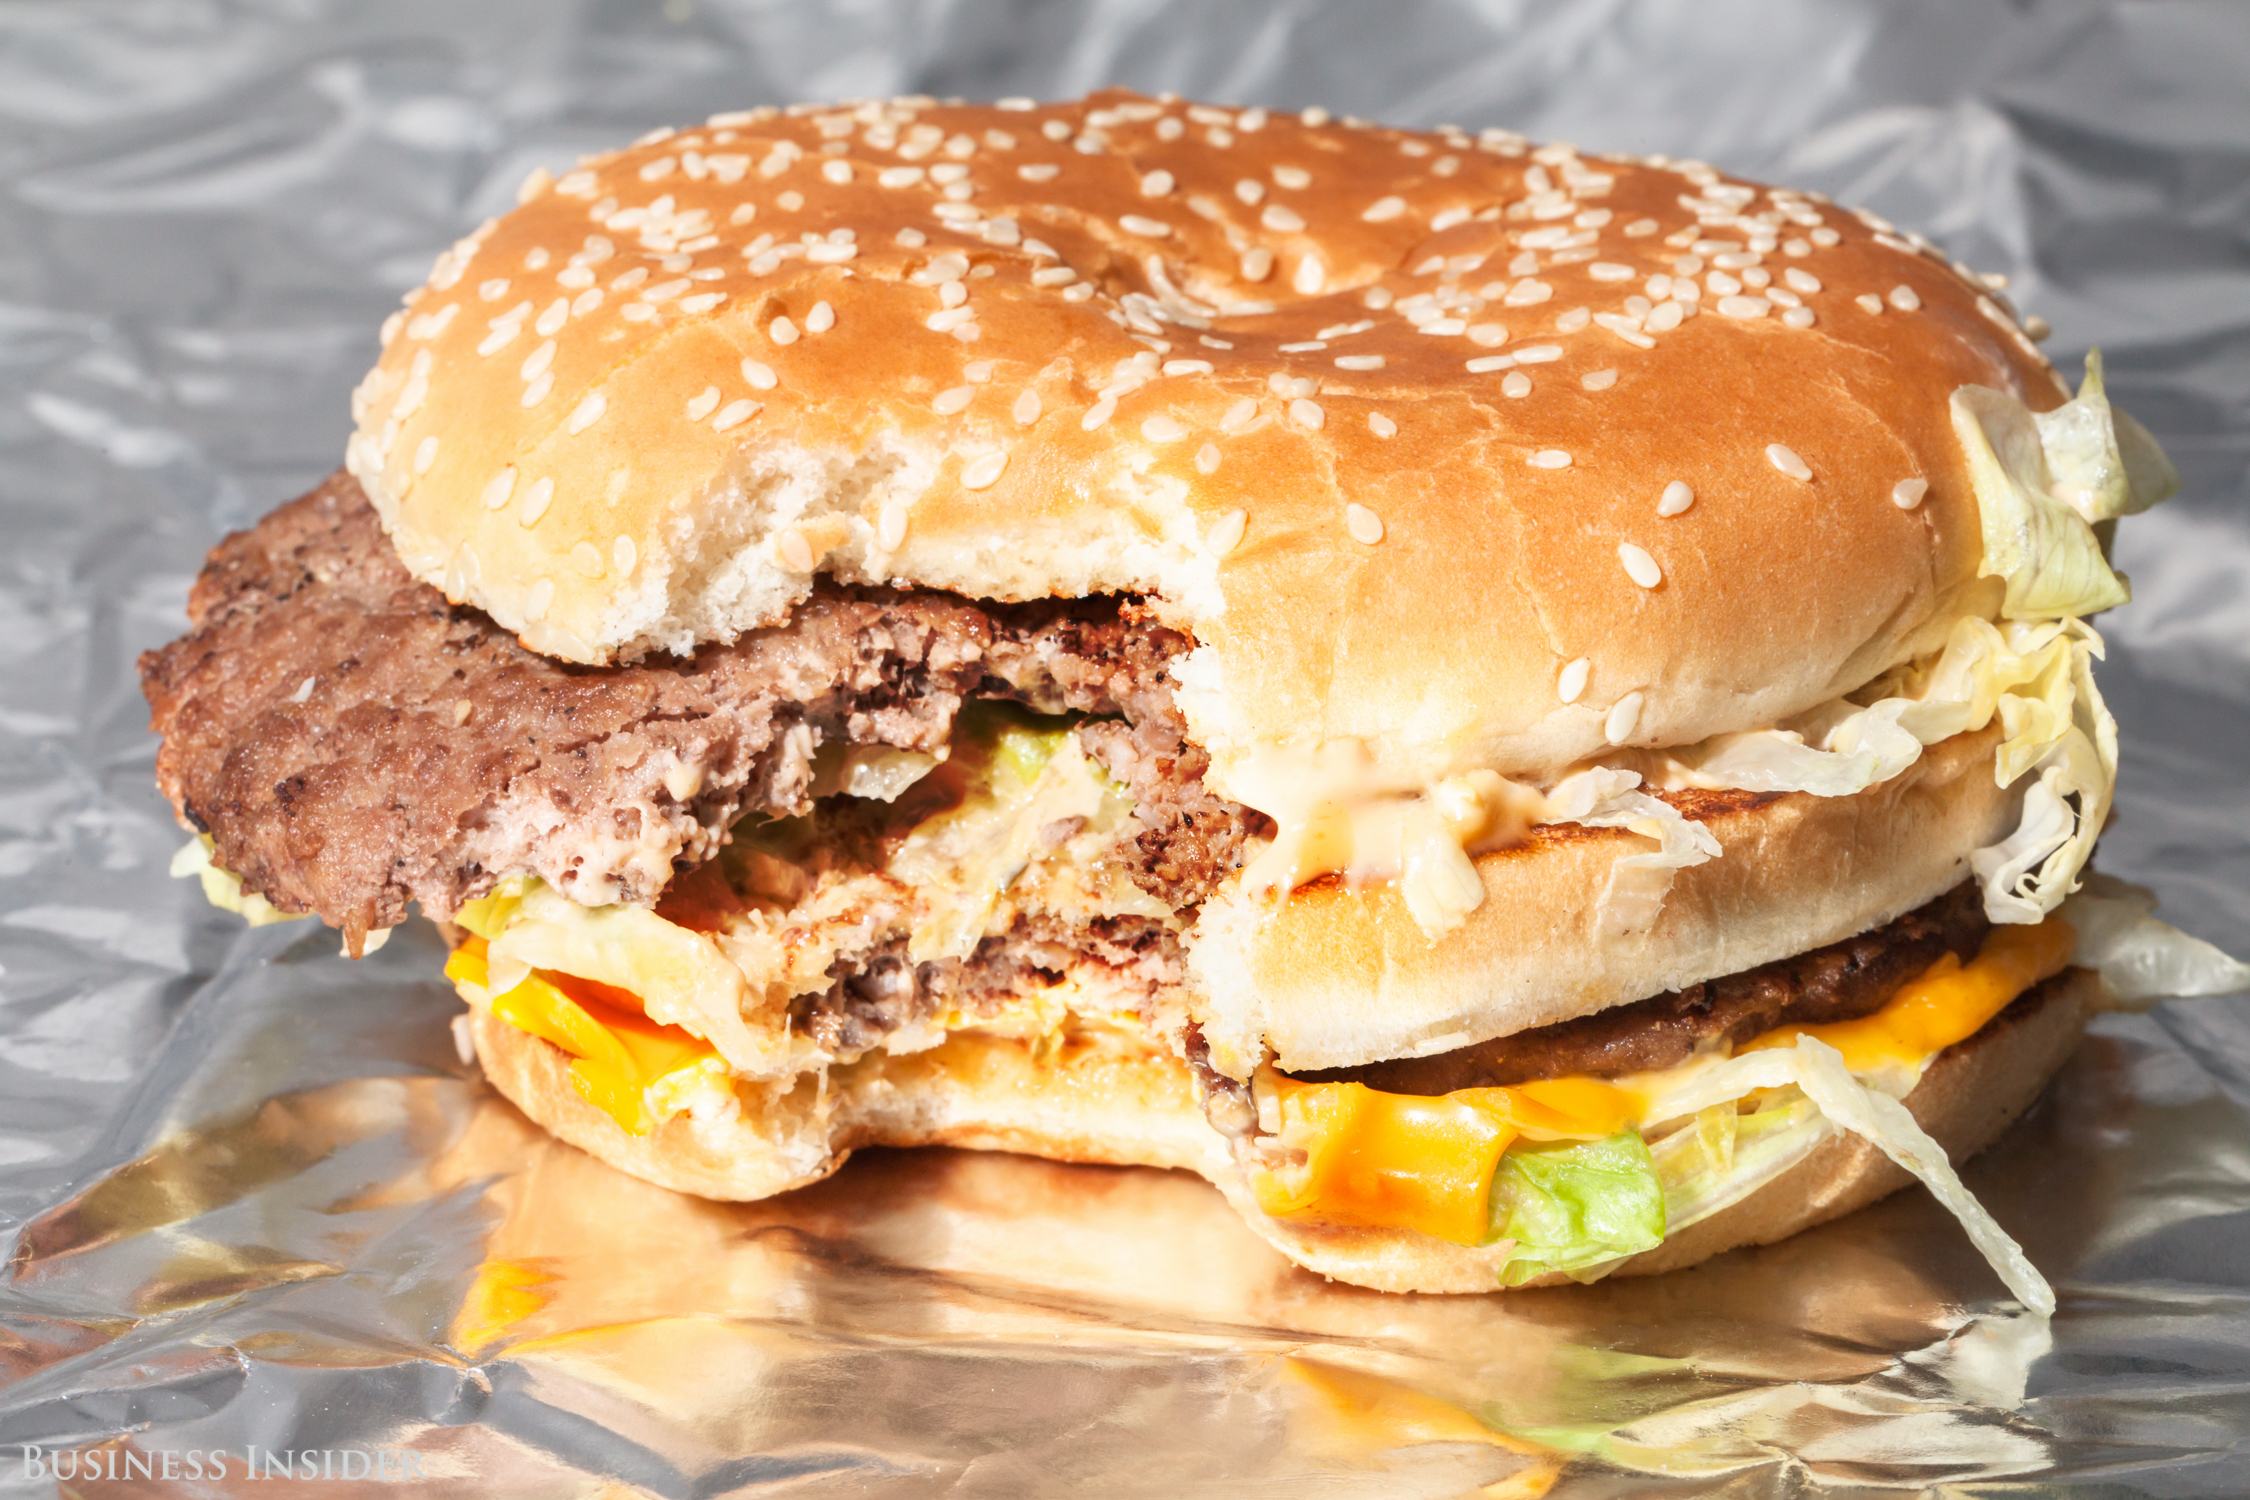 McDonald's gedijt op de beurs Big Mac's in verschillende maten blijkt